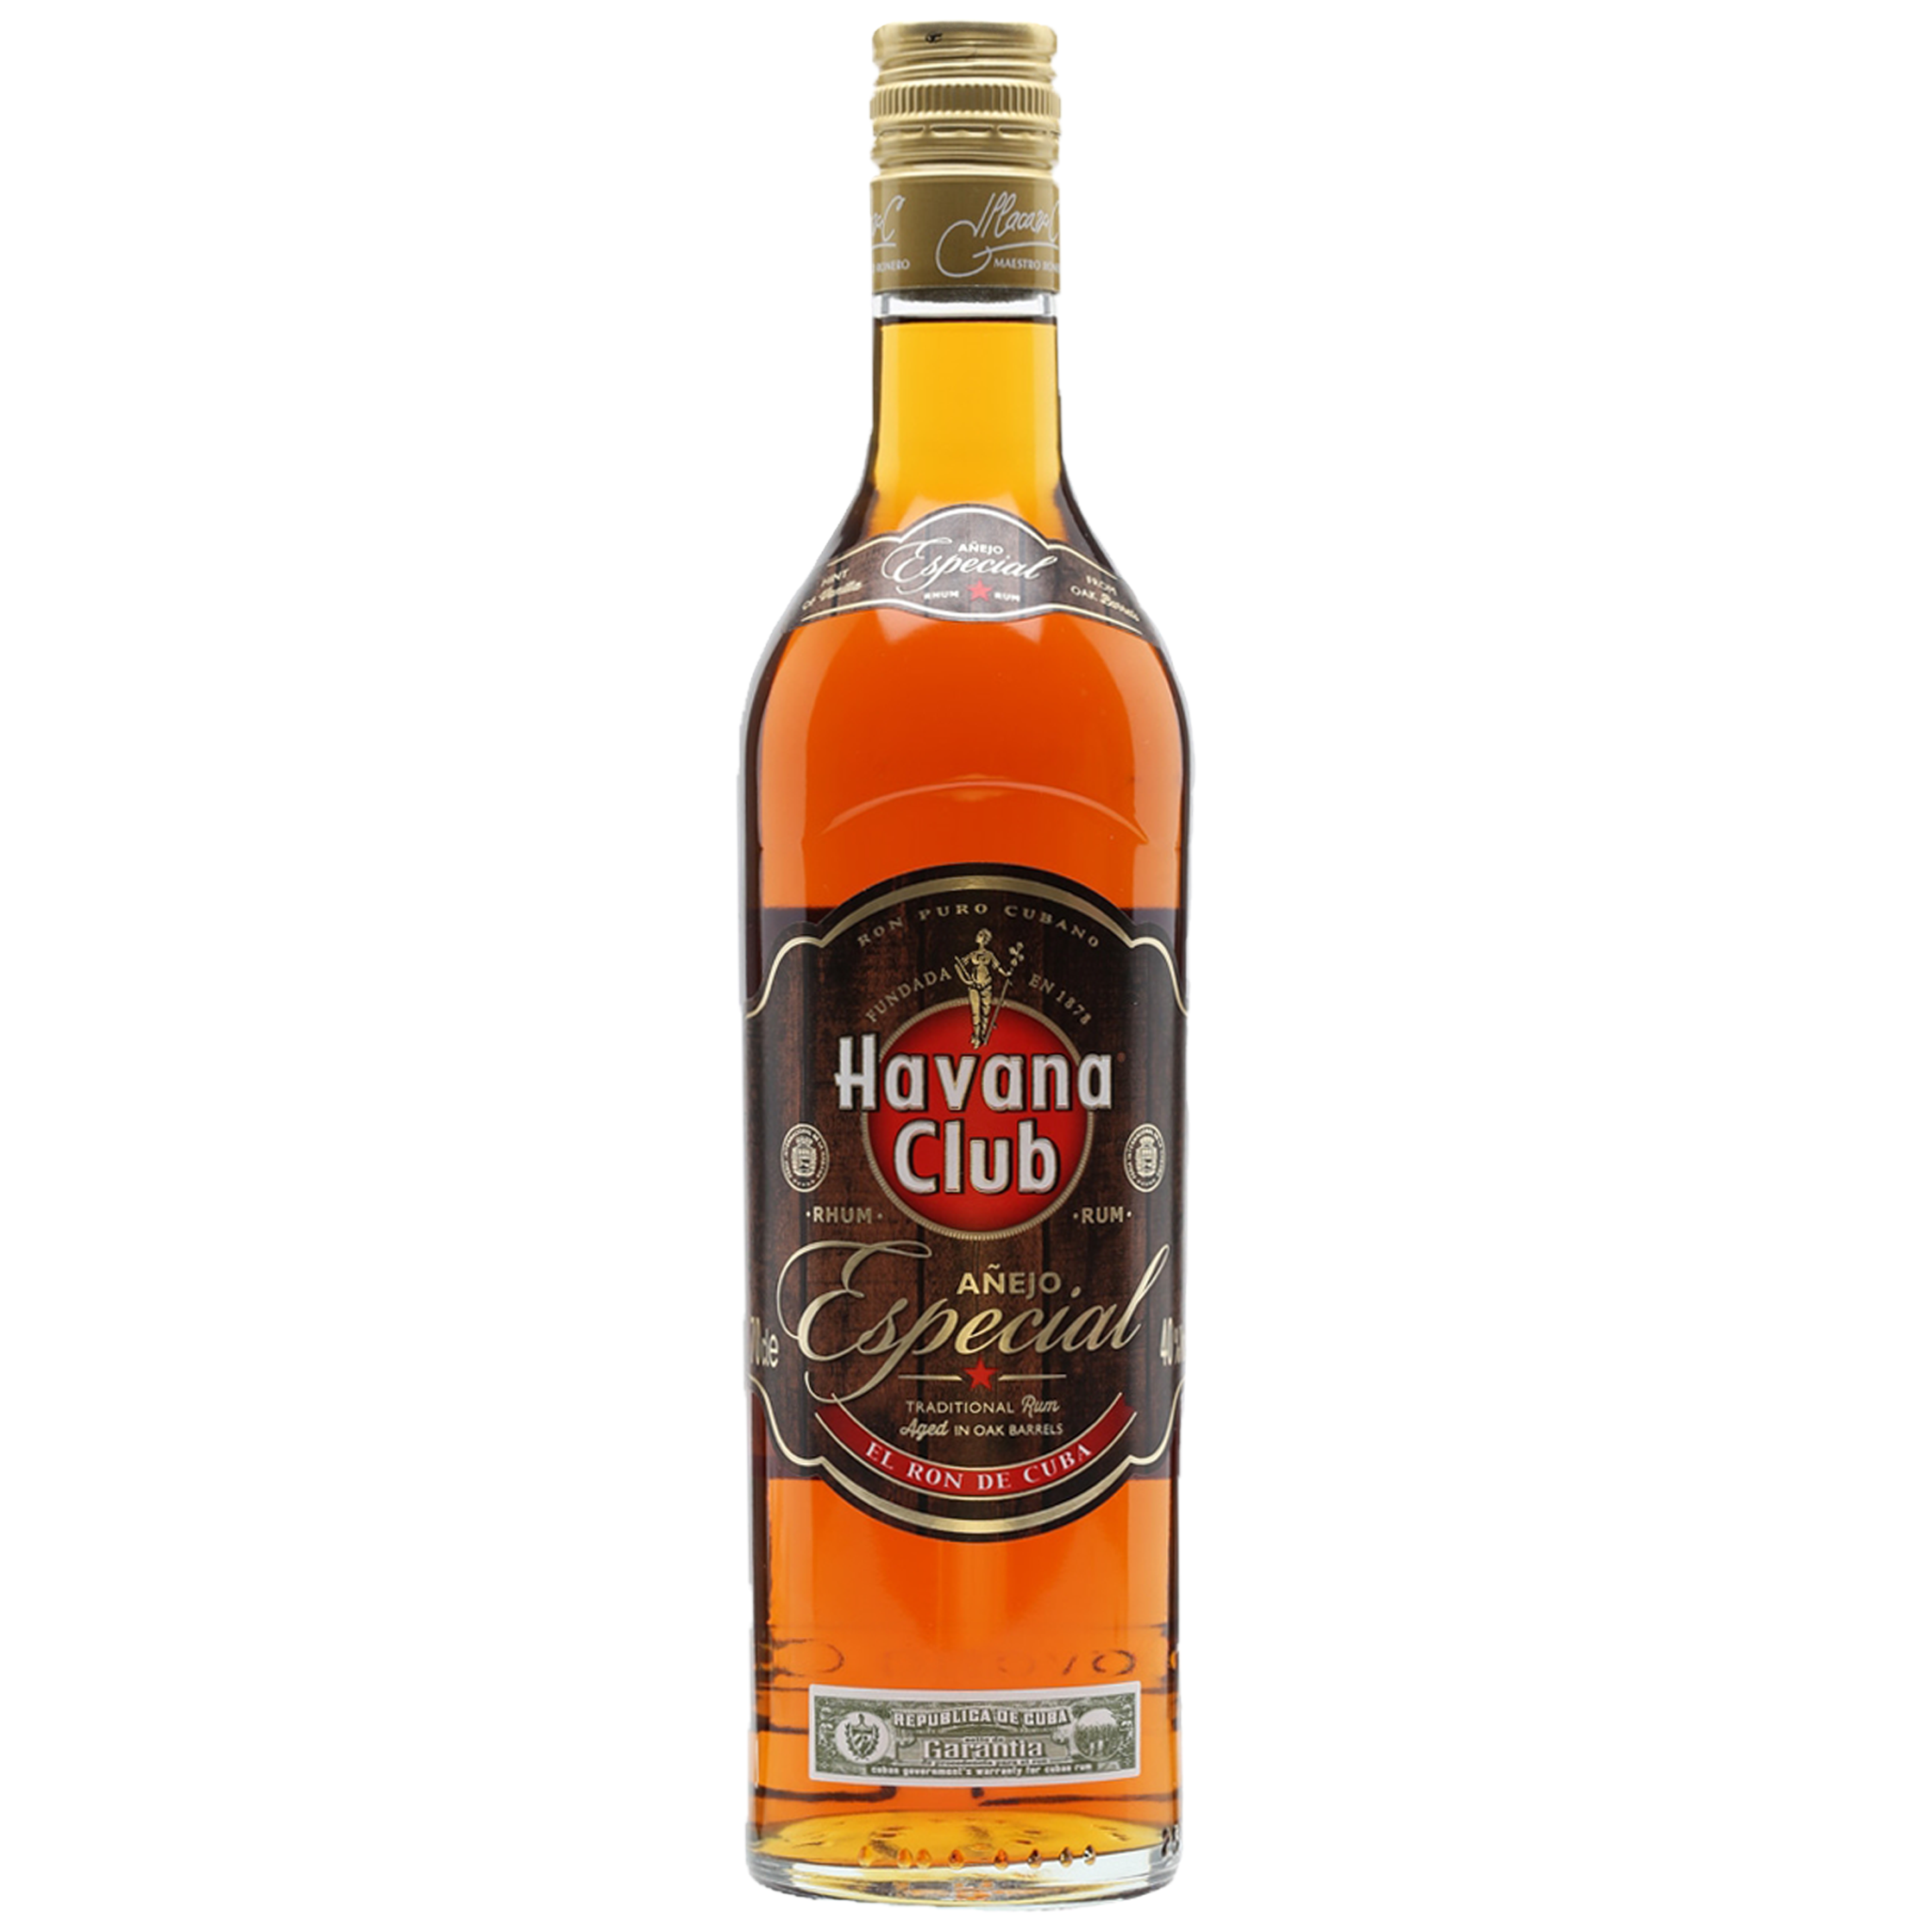 Havana Club Añejo Especial Cuban 0,7l Rum 40% Vol